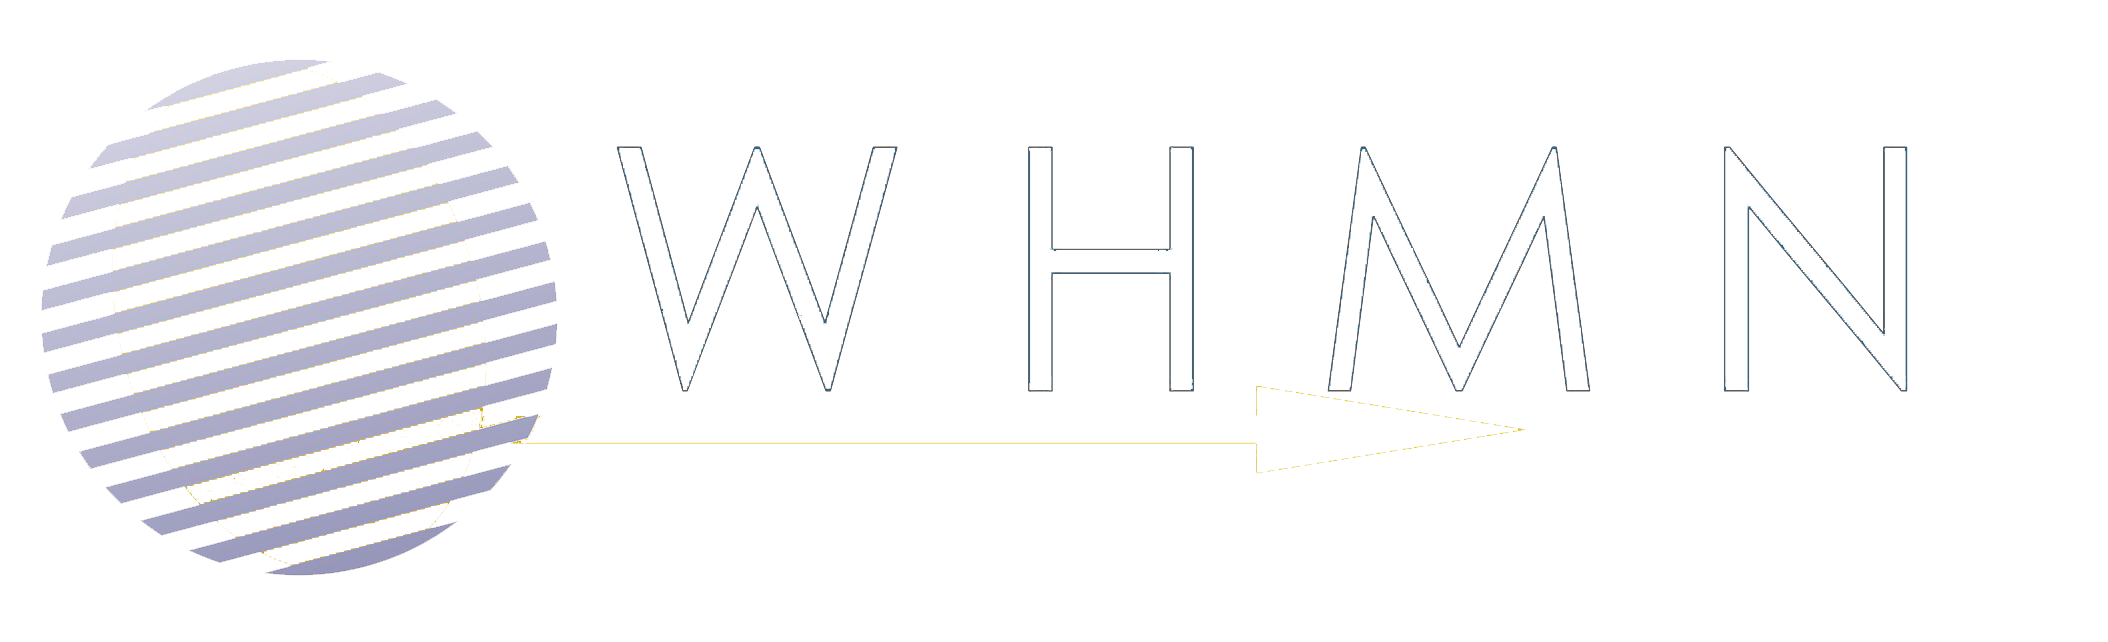 World Harvest Ministers Network Logo